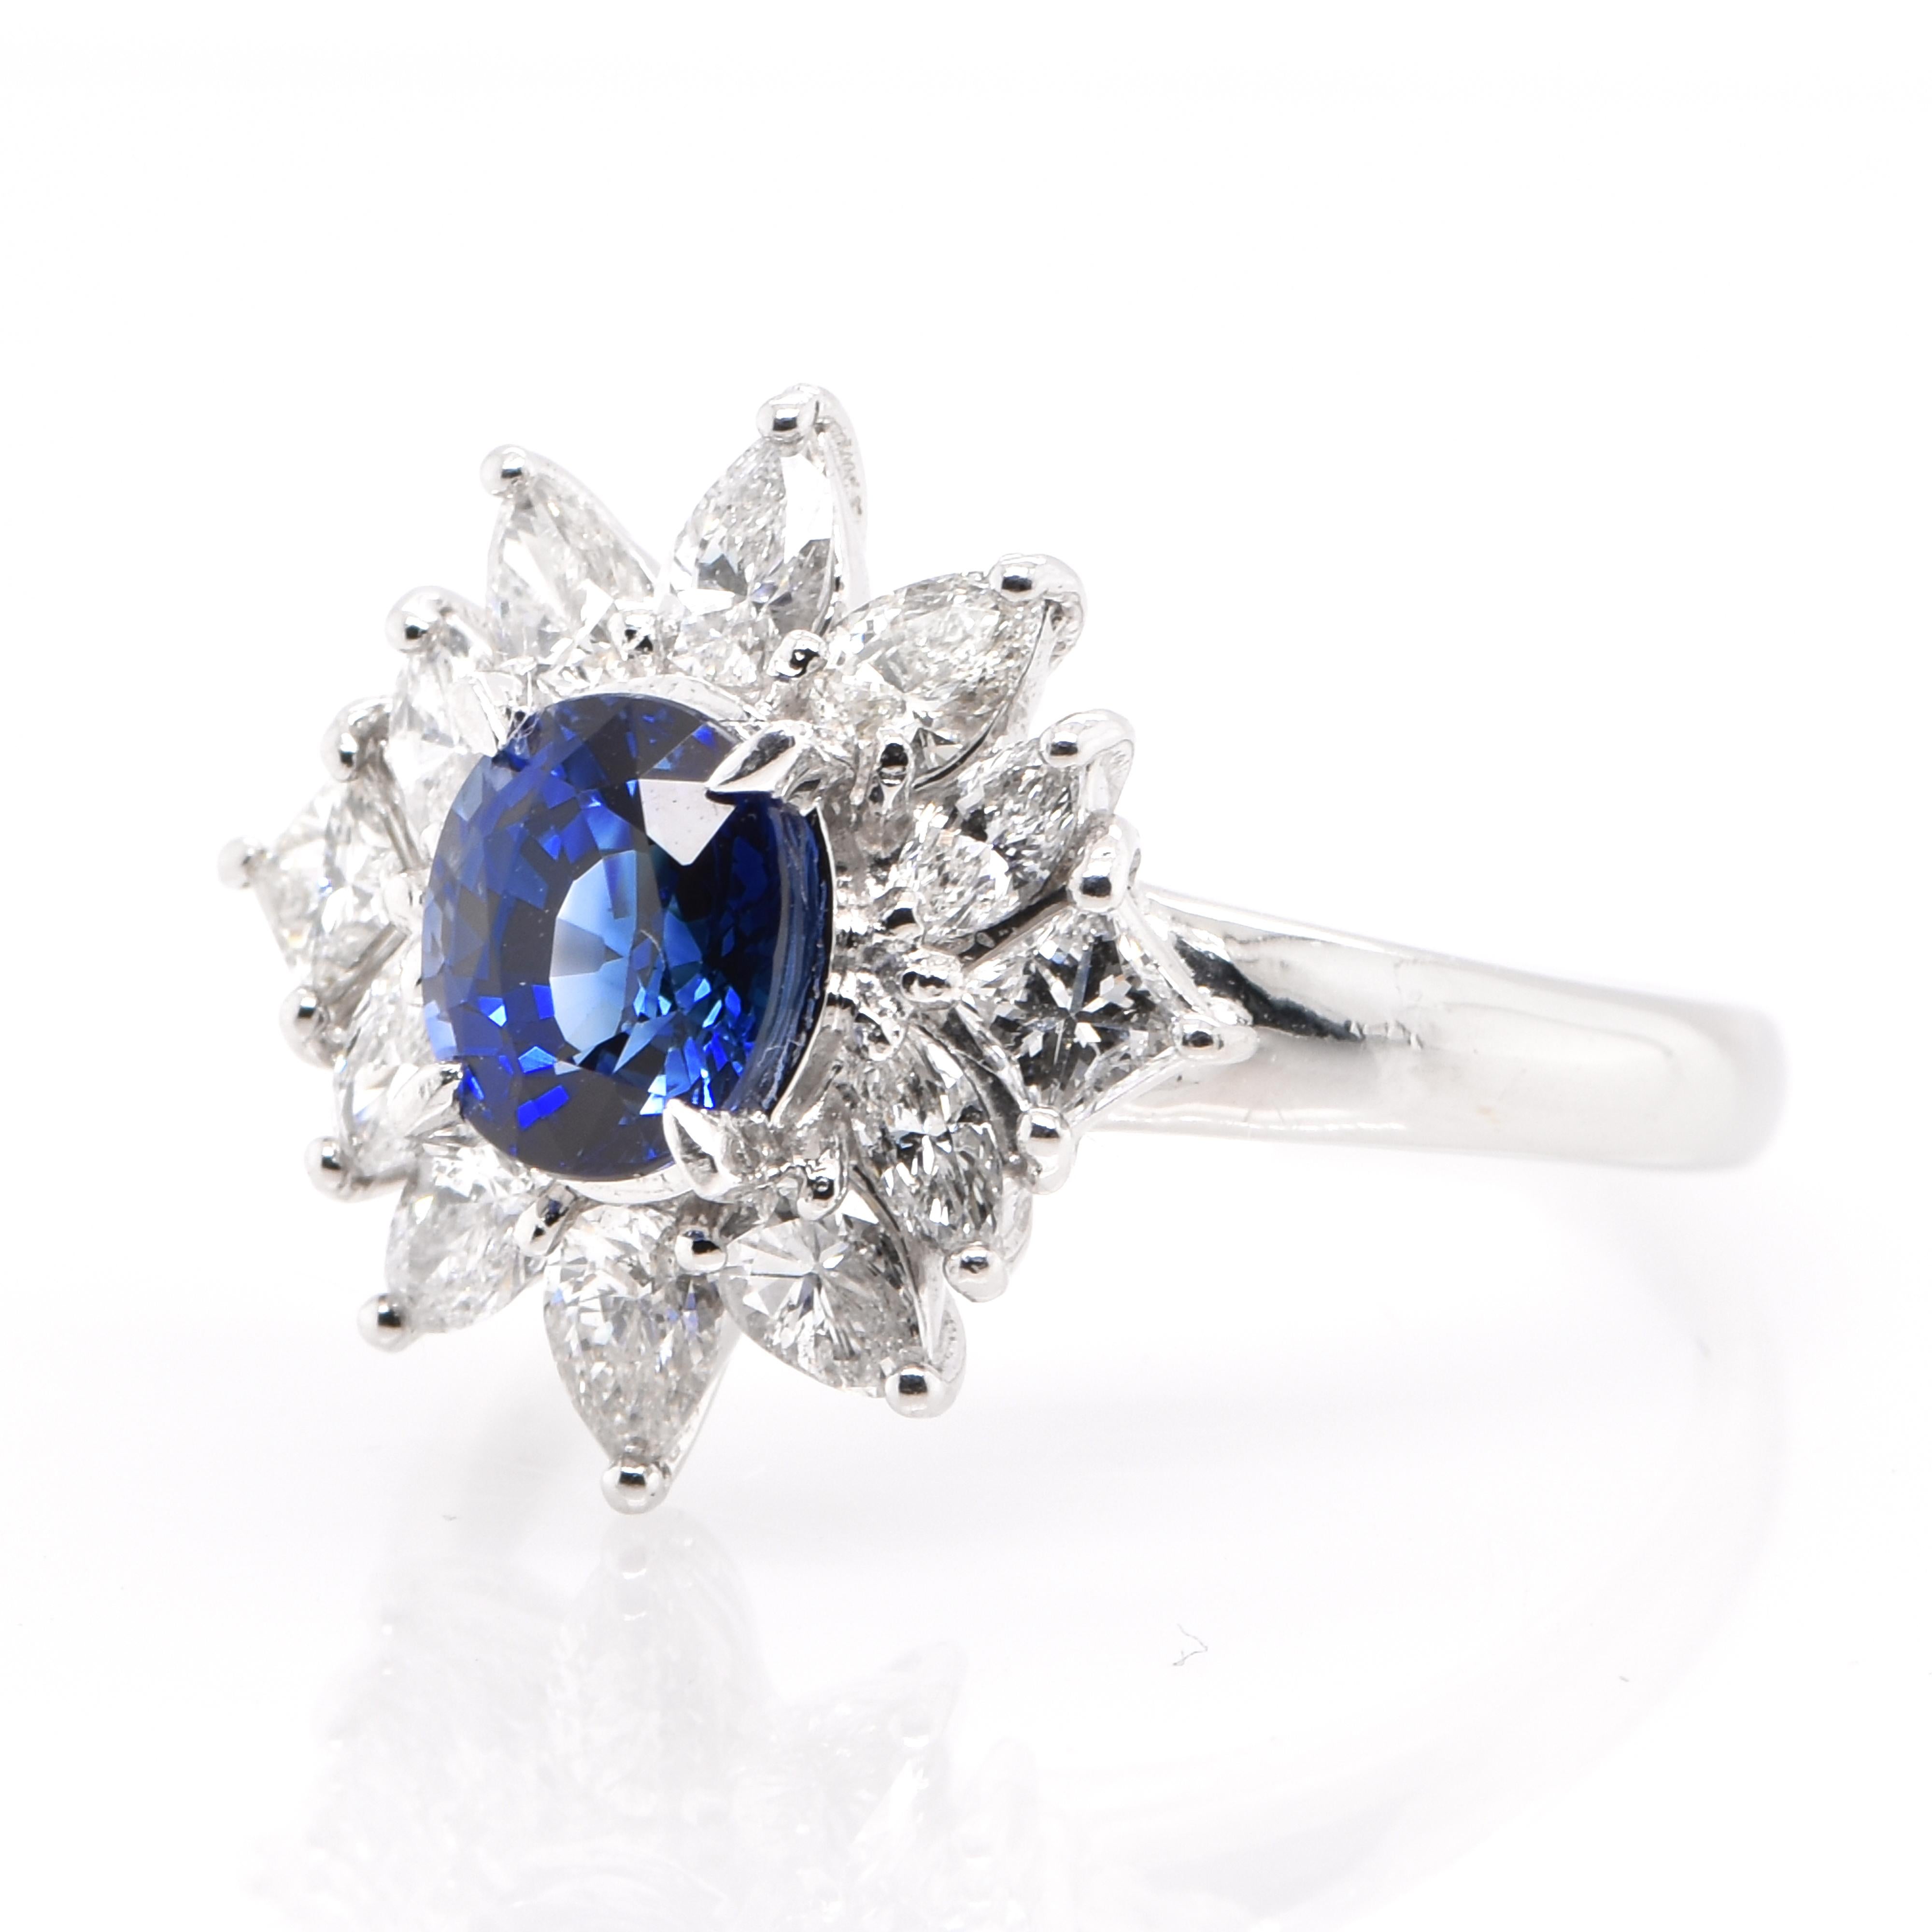 Ein wunderschöner Ring mit einem natürlichen blauen Saphir von 1,11 Karat und Diamanten von 0,89 Karat, gefasst in Platin. Saphire haben eine außergewöhnliche Haltbarkeit - sie zeichnen sich durch Härte, Zähigkeit und Langlebigkeit aus, was sie zu